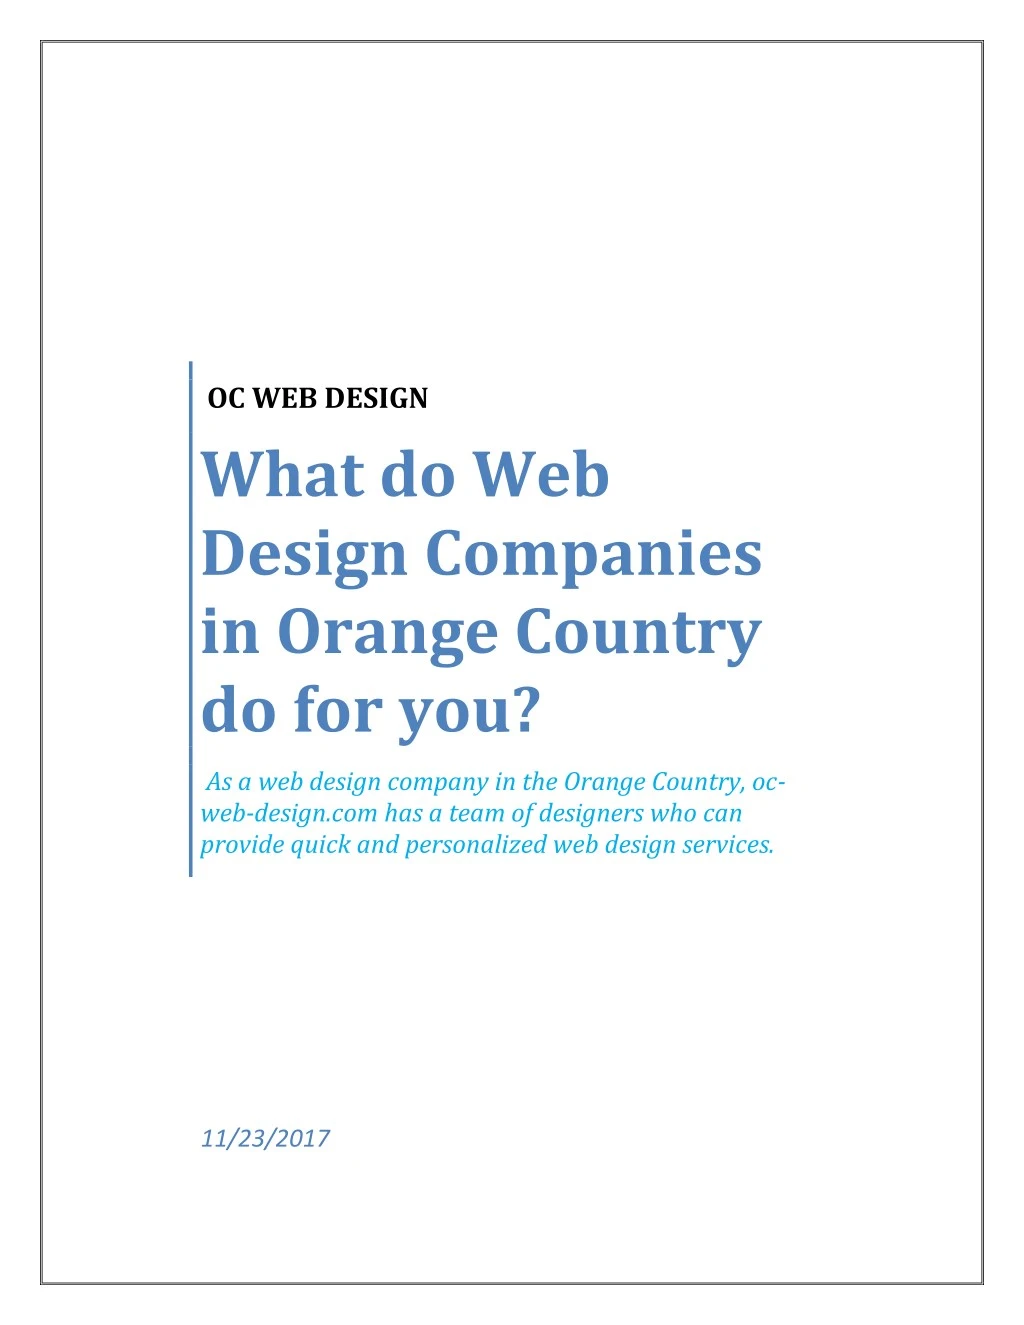 oc web design what do web design companies